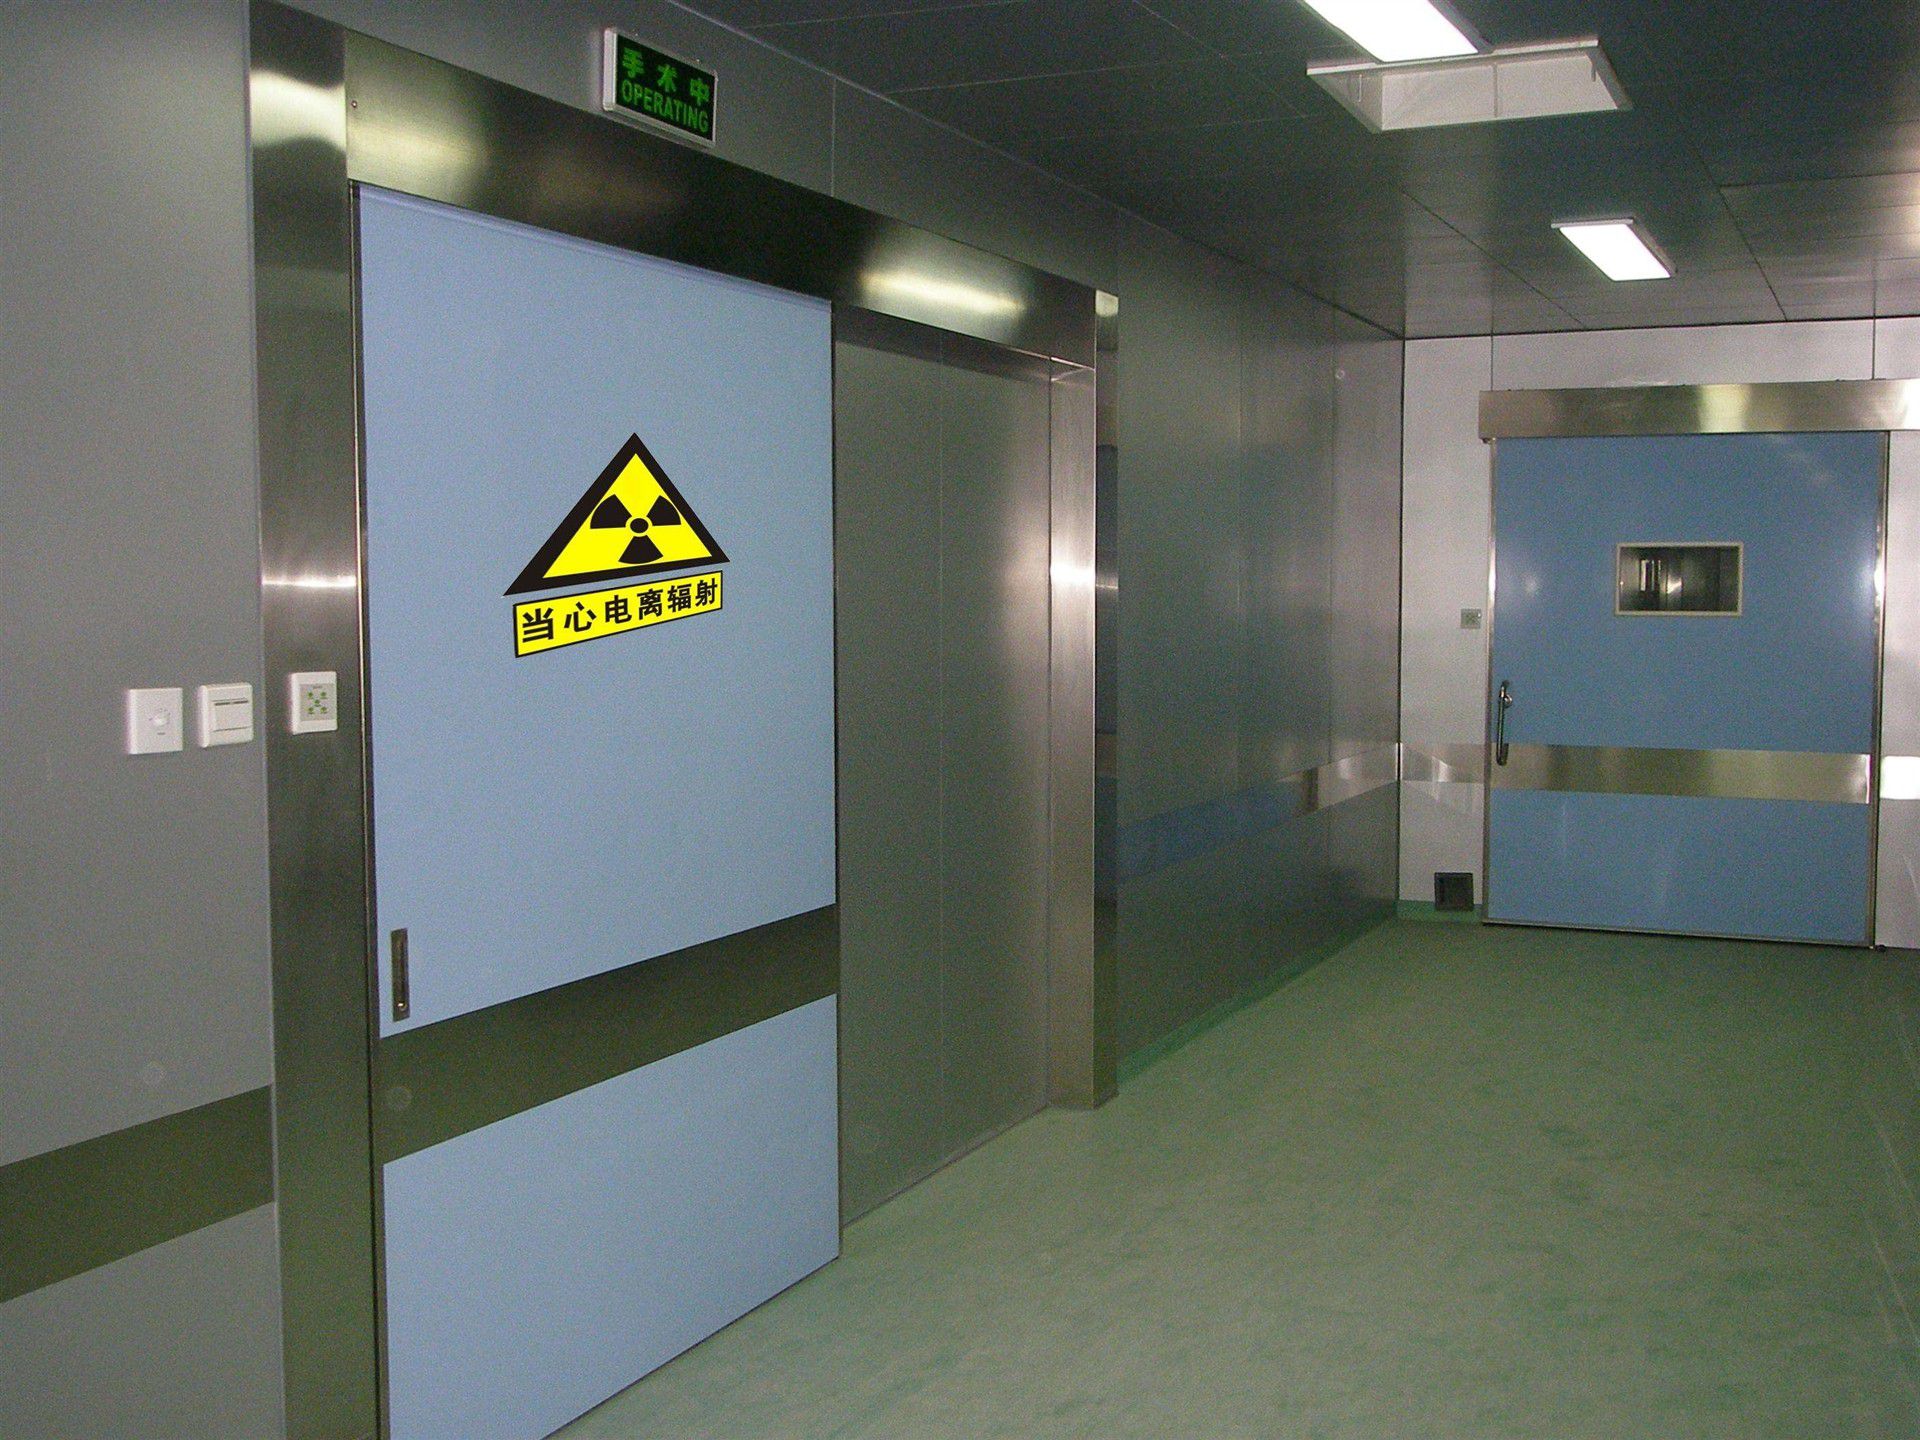 CT室铅门,铅箱,3mm铅板,CT室铅板,放射科铅板,铅板厂家-乌兰察布放射科铅板公司